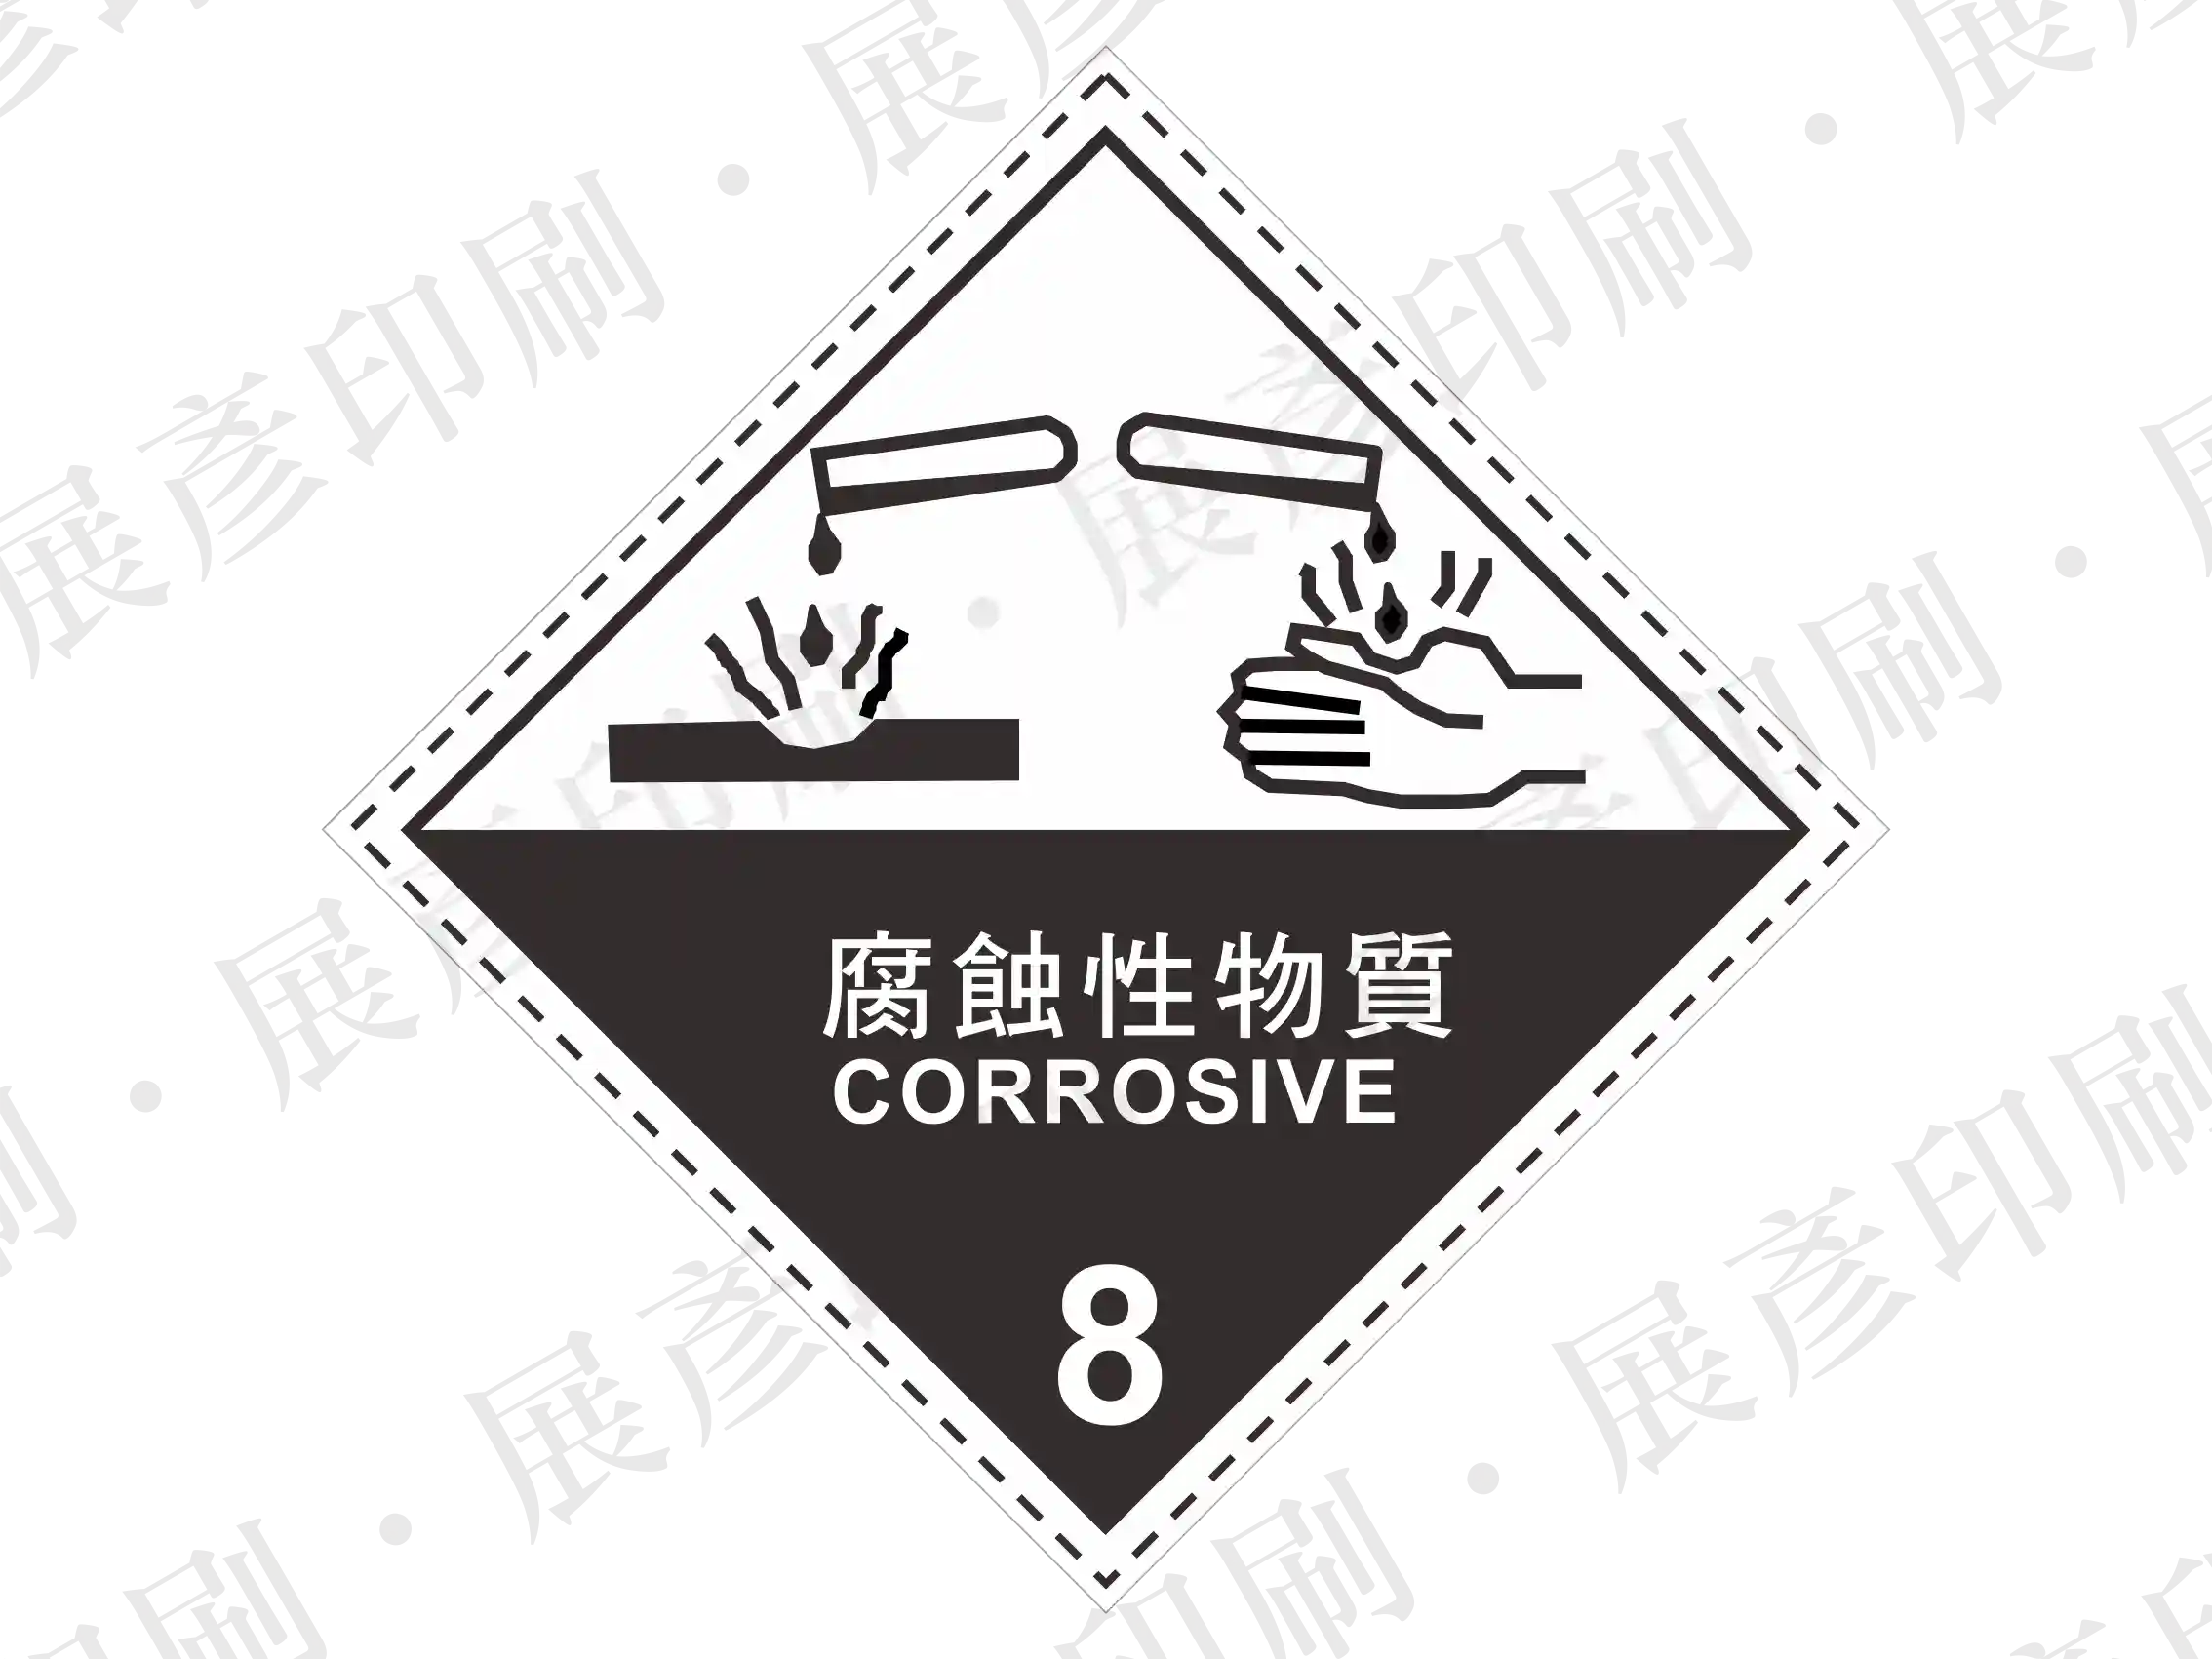 化08-100 腐蝕性物品危險標示標籤貼紙 第8類